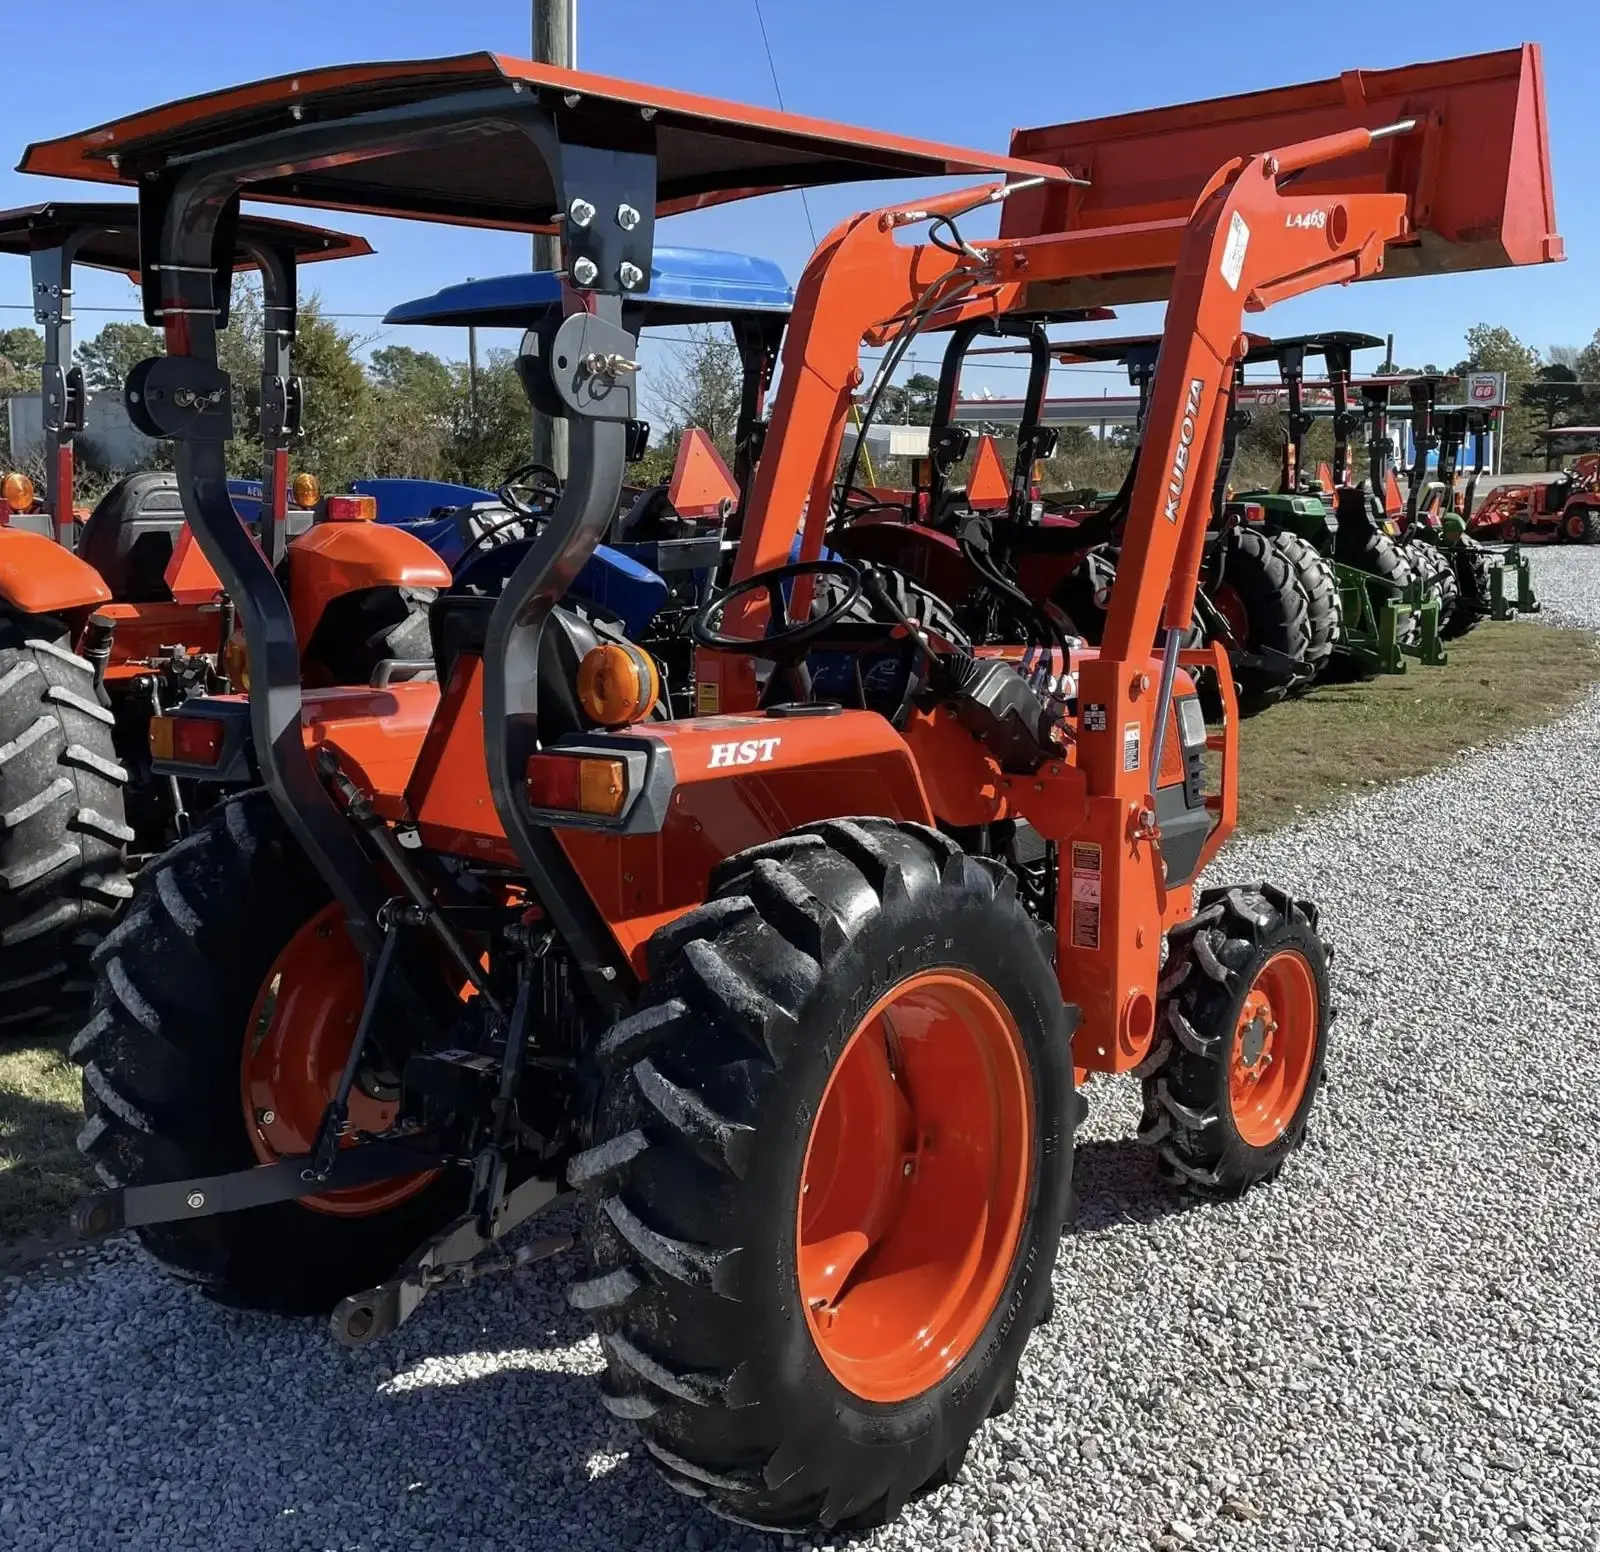 Б/у сельскохозяйственное оборудование б/у 4WD трактор John Deere тракторы для сельского хозяйства 4x4 трактора для продажи владельцем